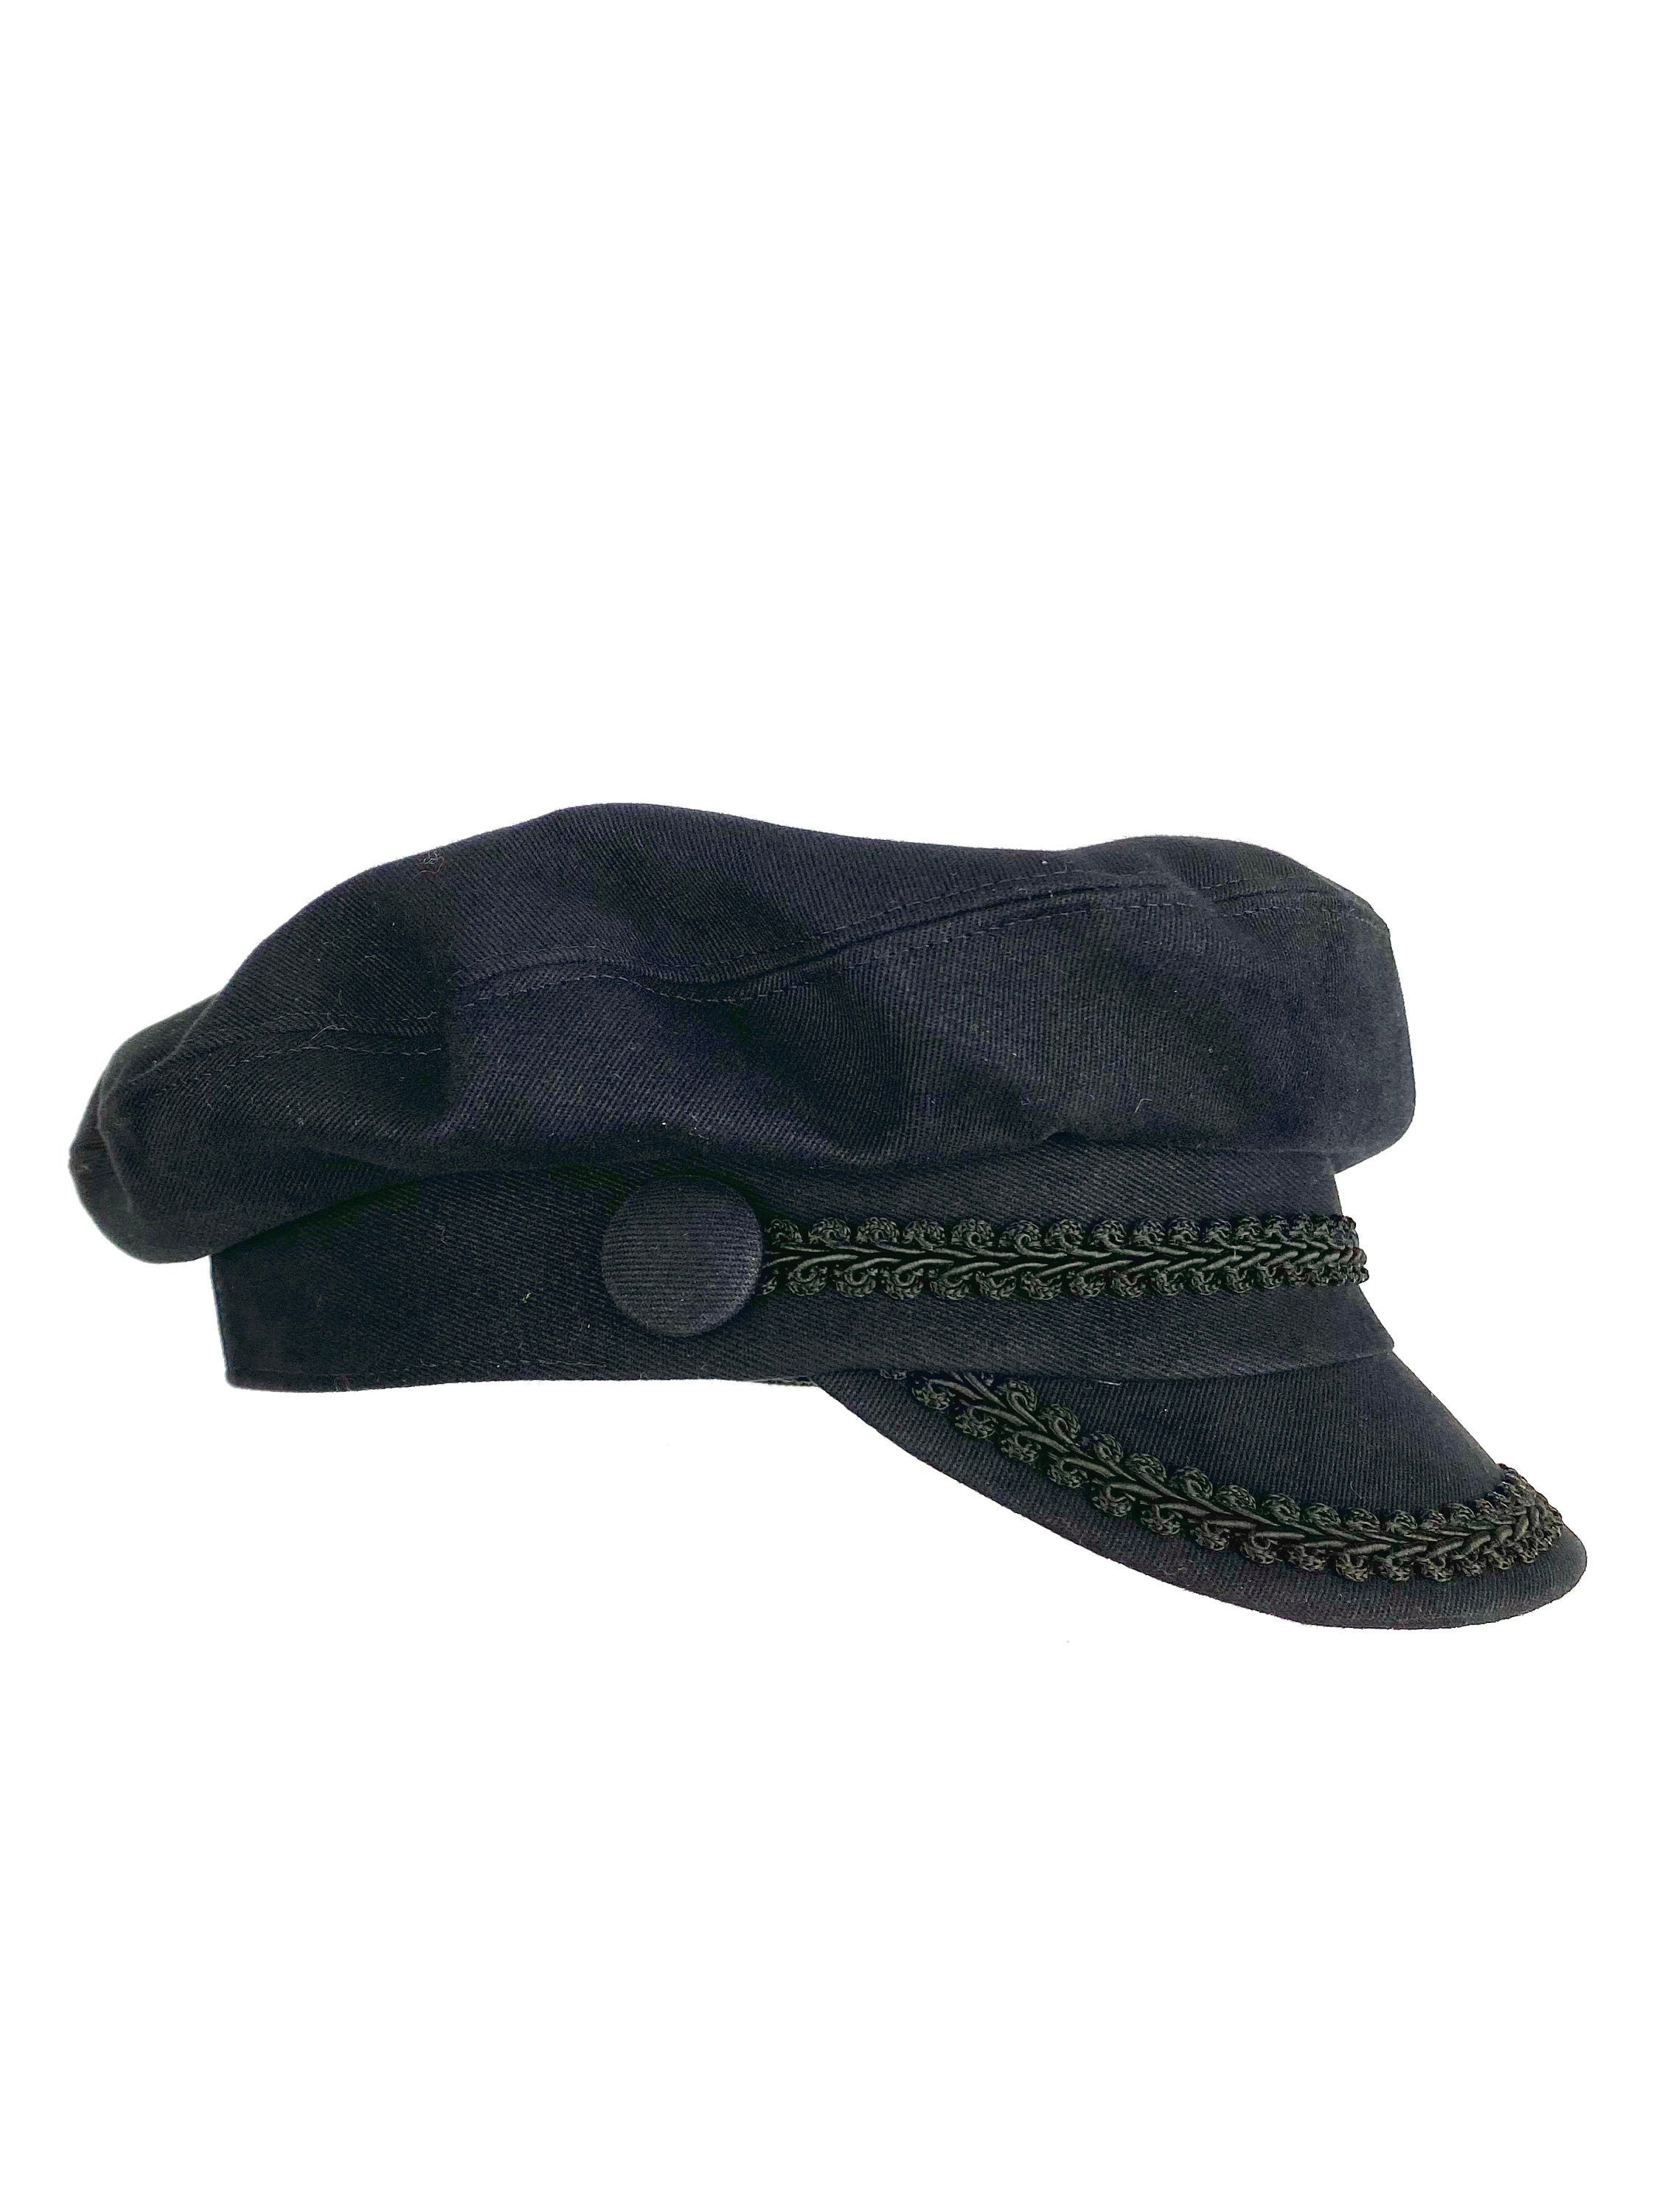 Black Sailor Hat - Handcrafted with Premium Cotton Fabric - Classic Nautical Cap